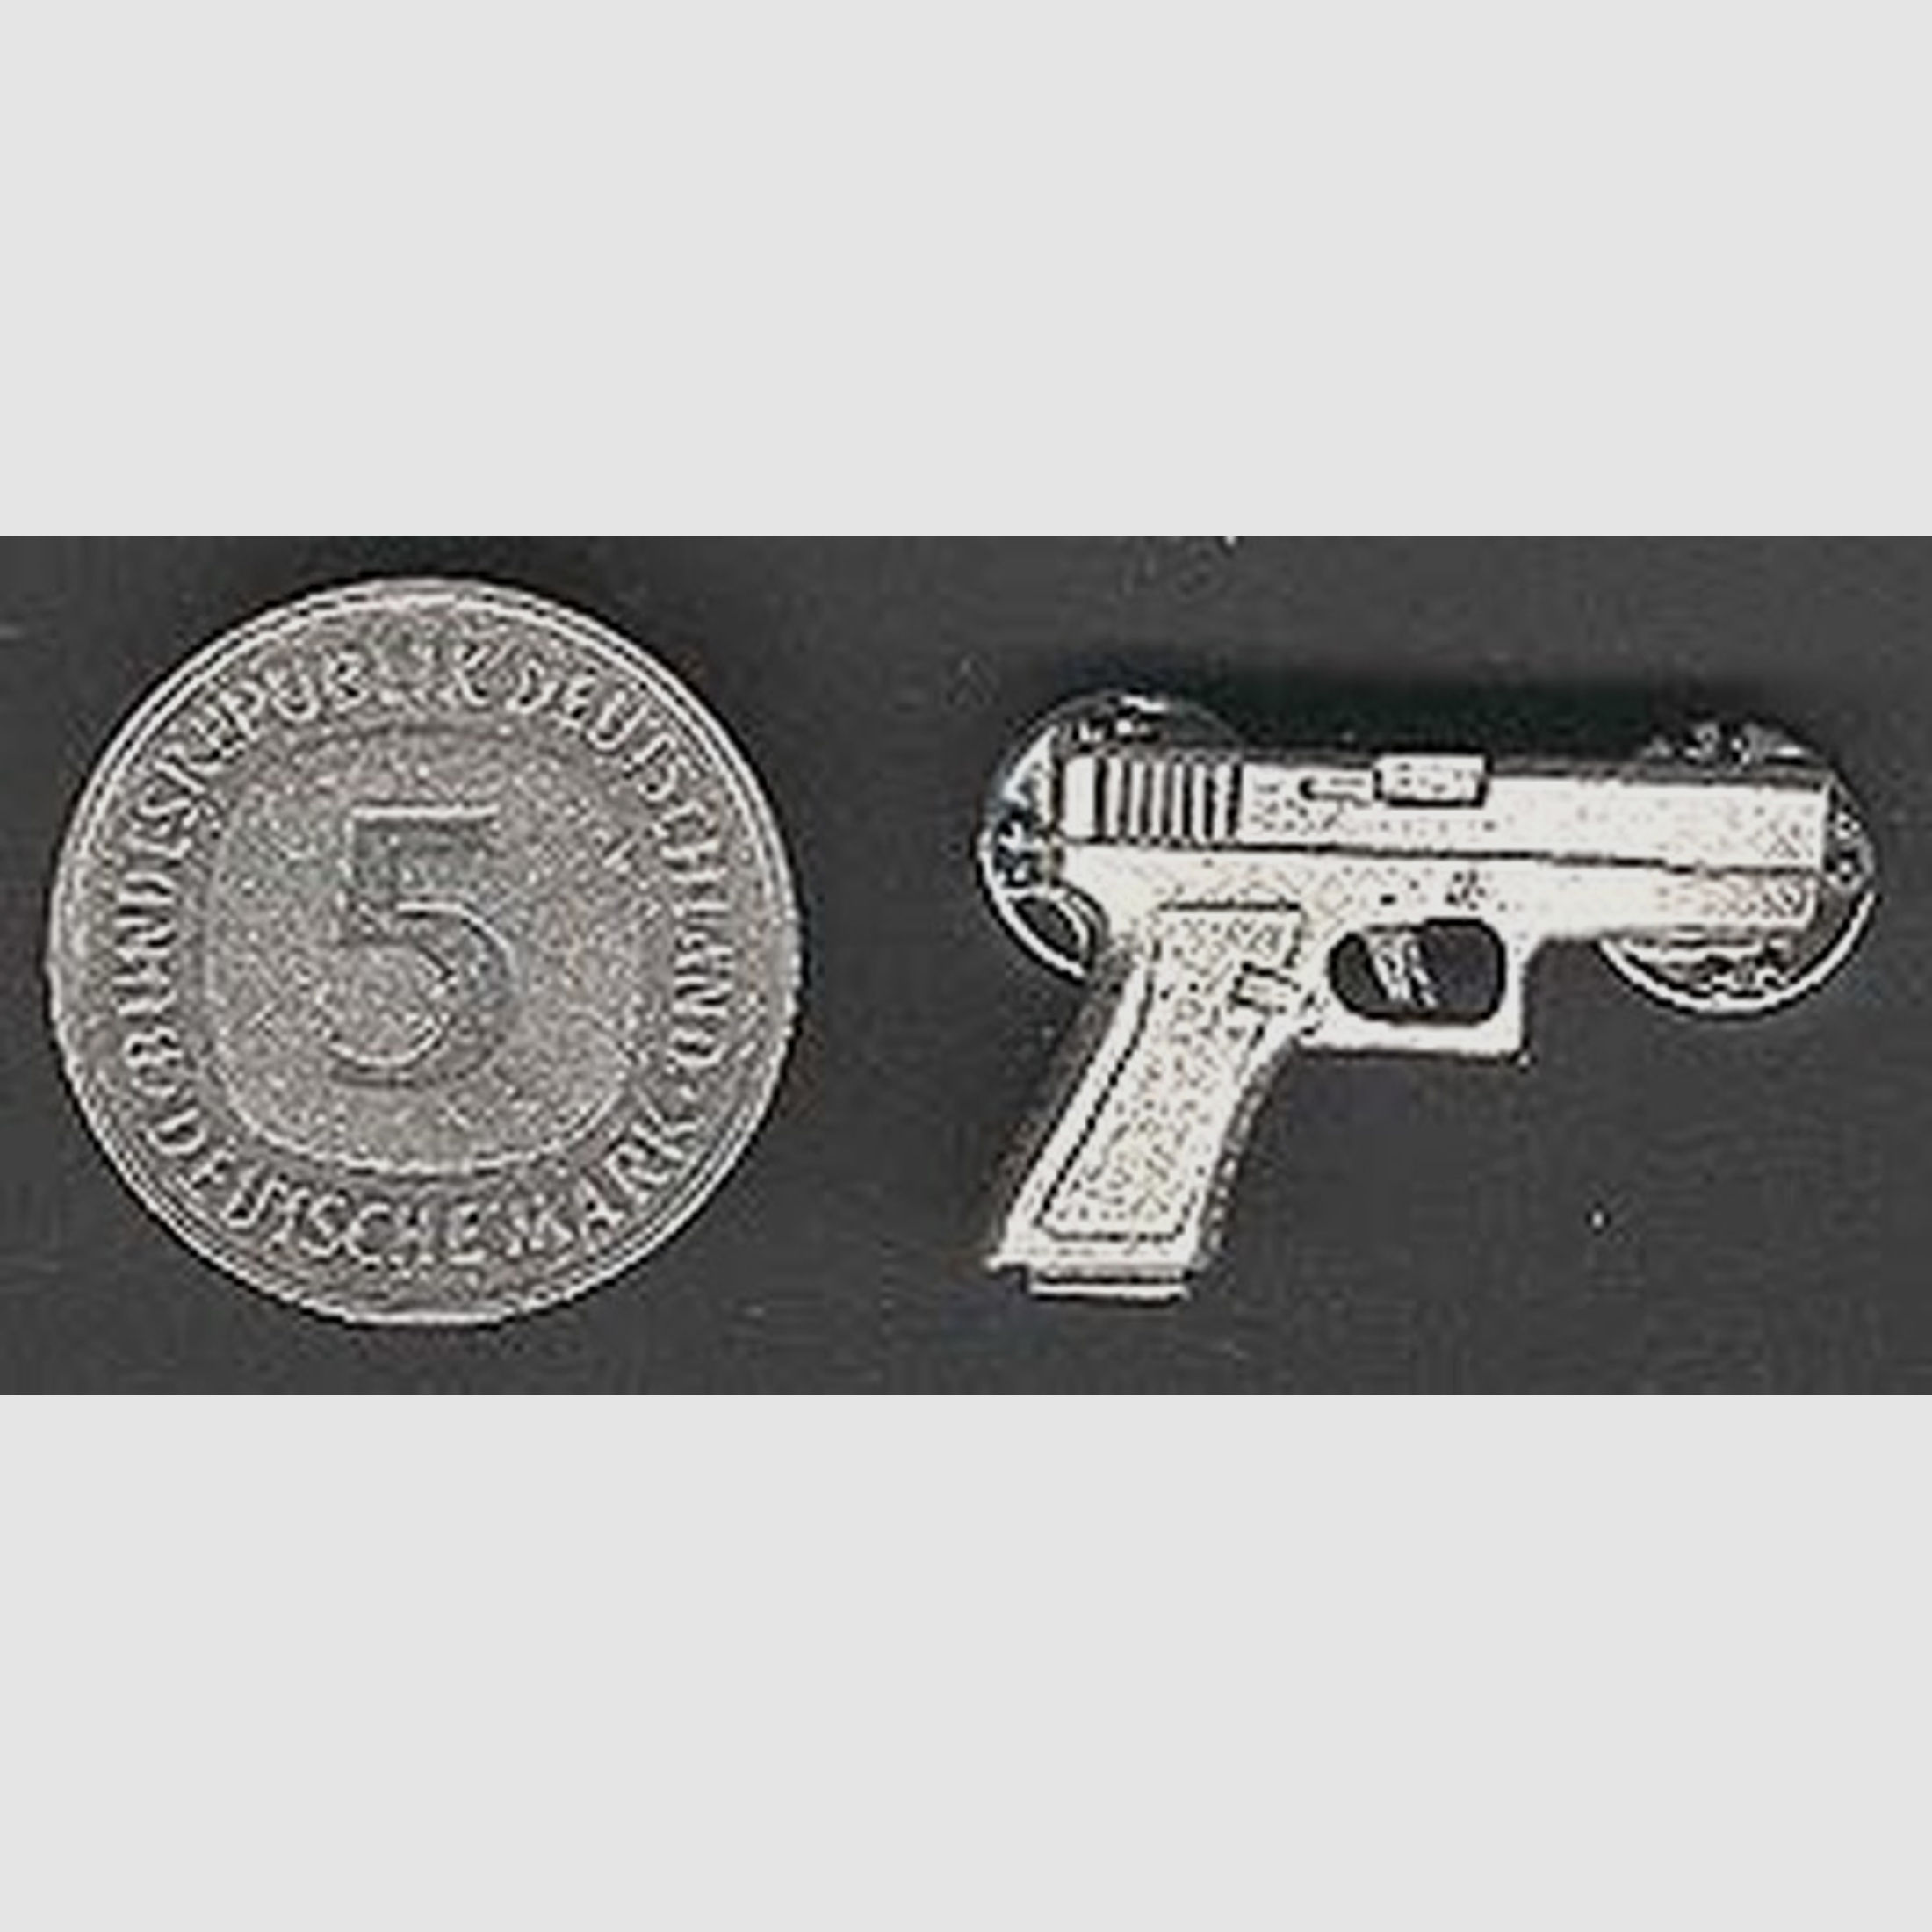 Pistole Glock als Metall-Anstecker